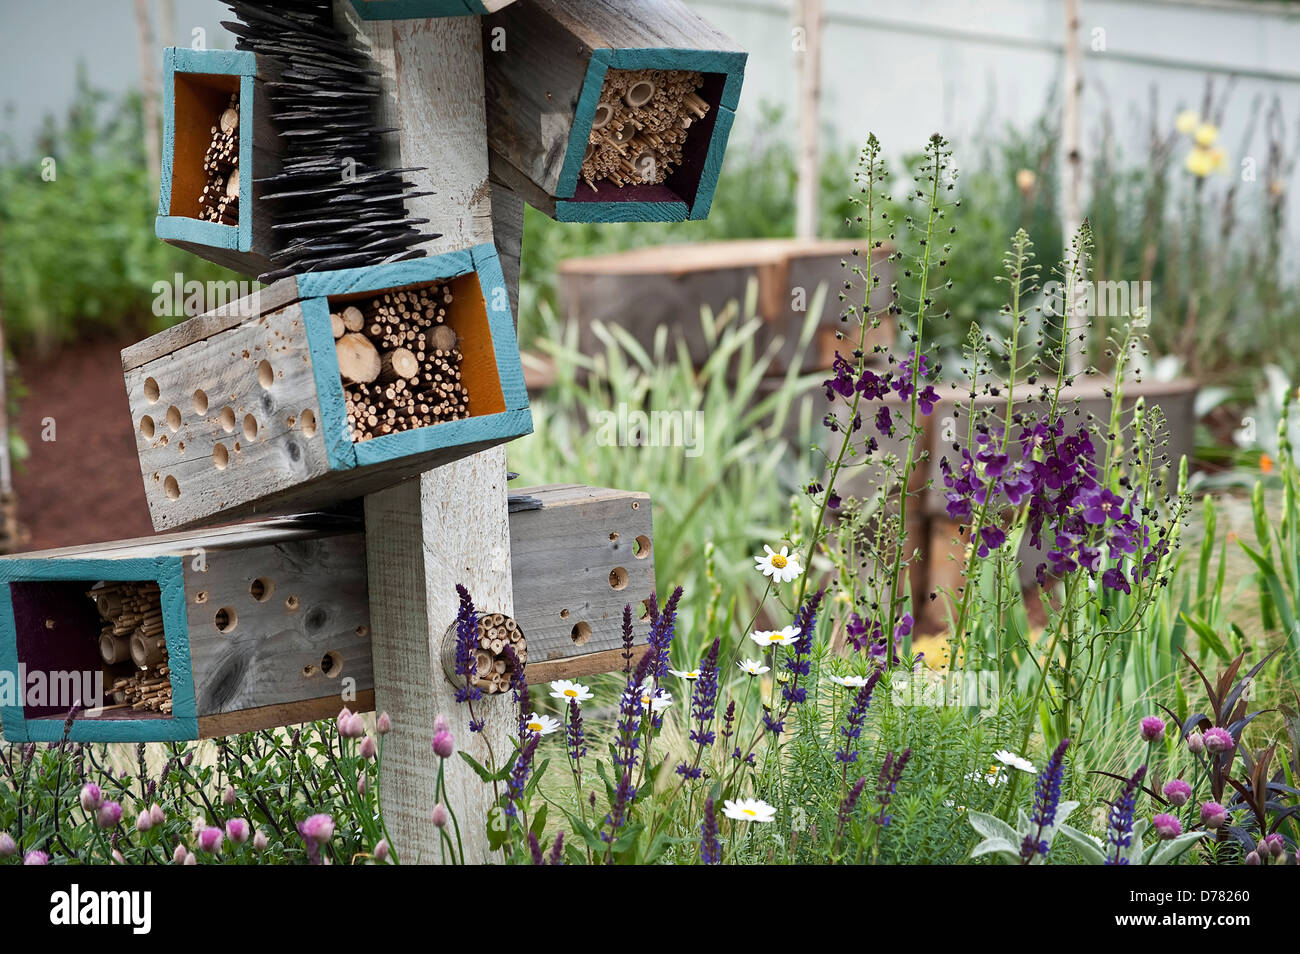 Chelsea Flowershow 2009, Zukunft Naturgarten, entworfen von Arche Design mit Boxen Insekten Lebensraum bietet. Stockfoto